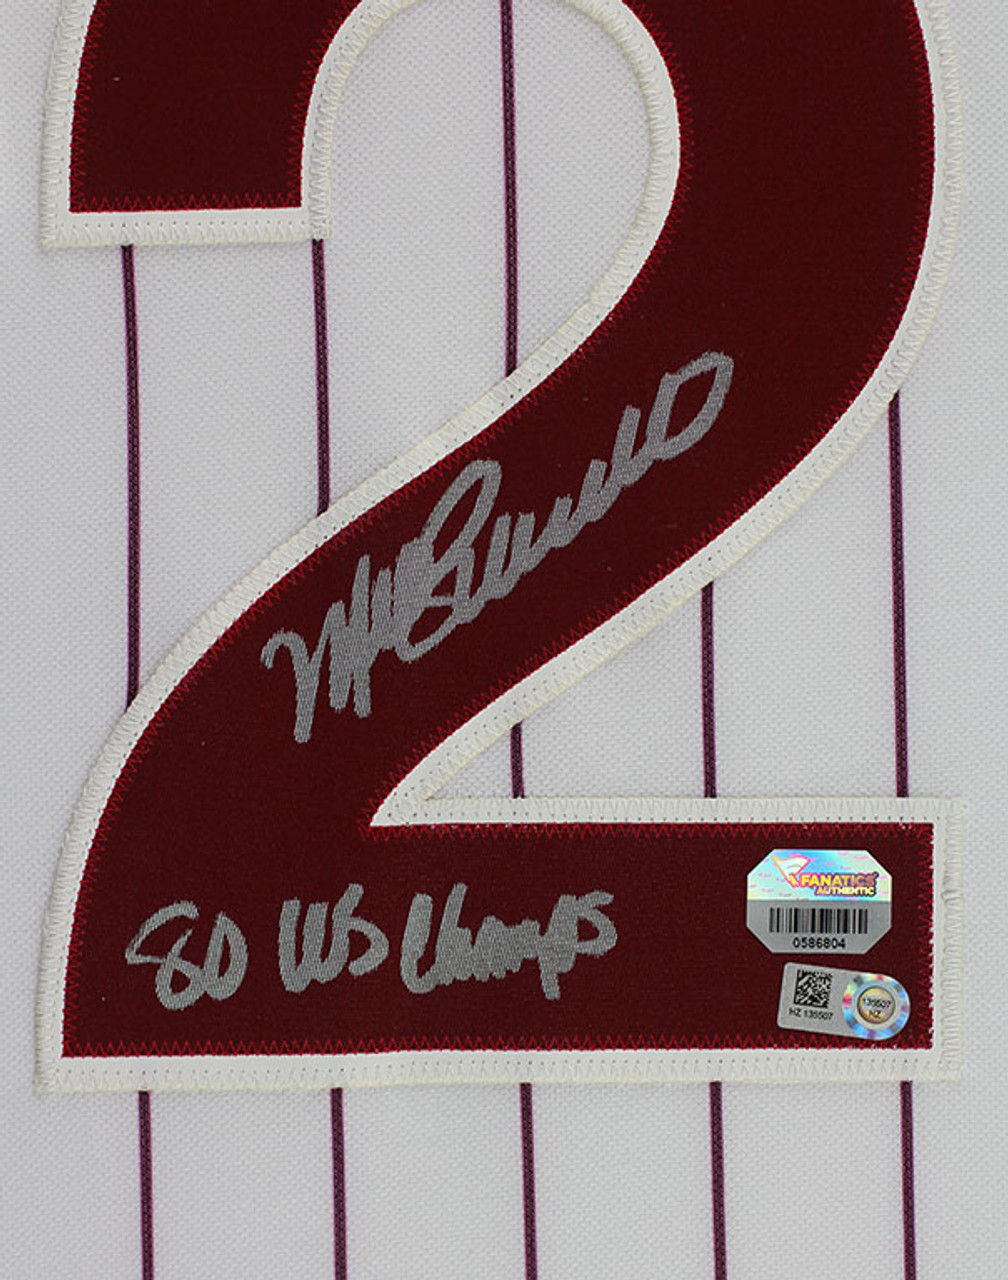 Mike Schmidt Philadelphia Phillies Fanatics Authentic Autographed